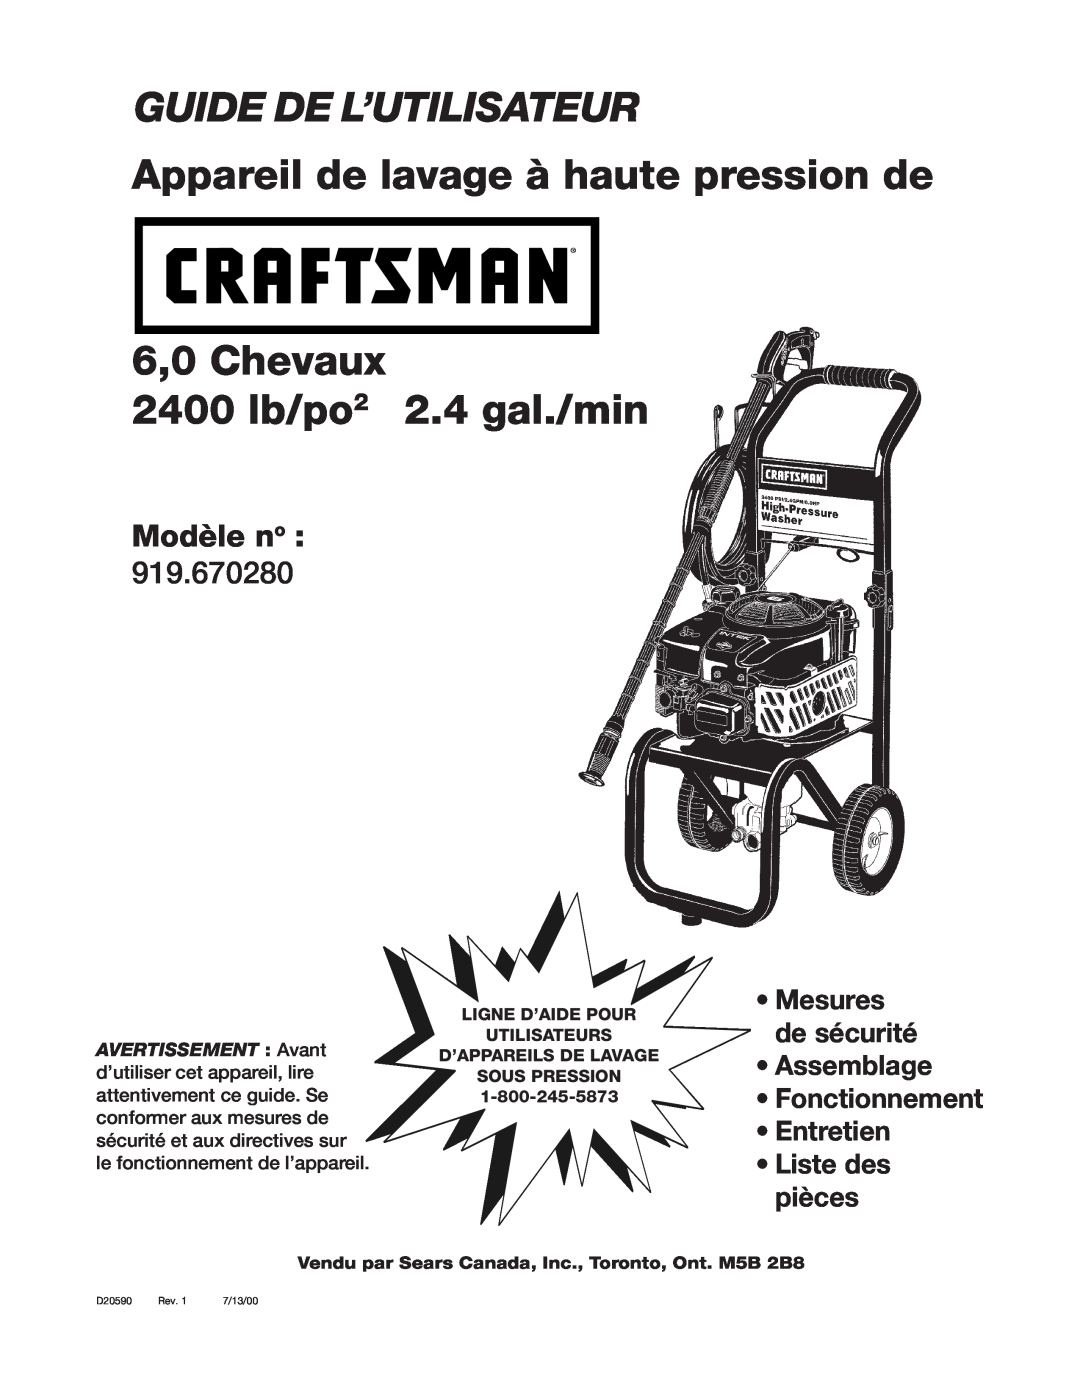 Craftsman D20590 Guide De L’Utilisateur, Appareil de lavage à haute pression de, 6,0 Chevaux 2400 lb/po2 2.4 gal./min, Rev 